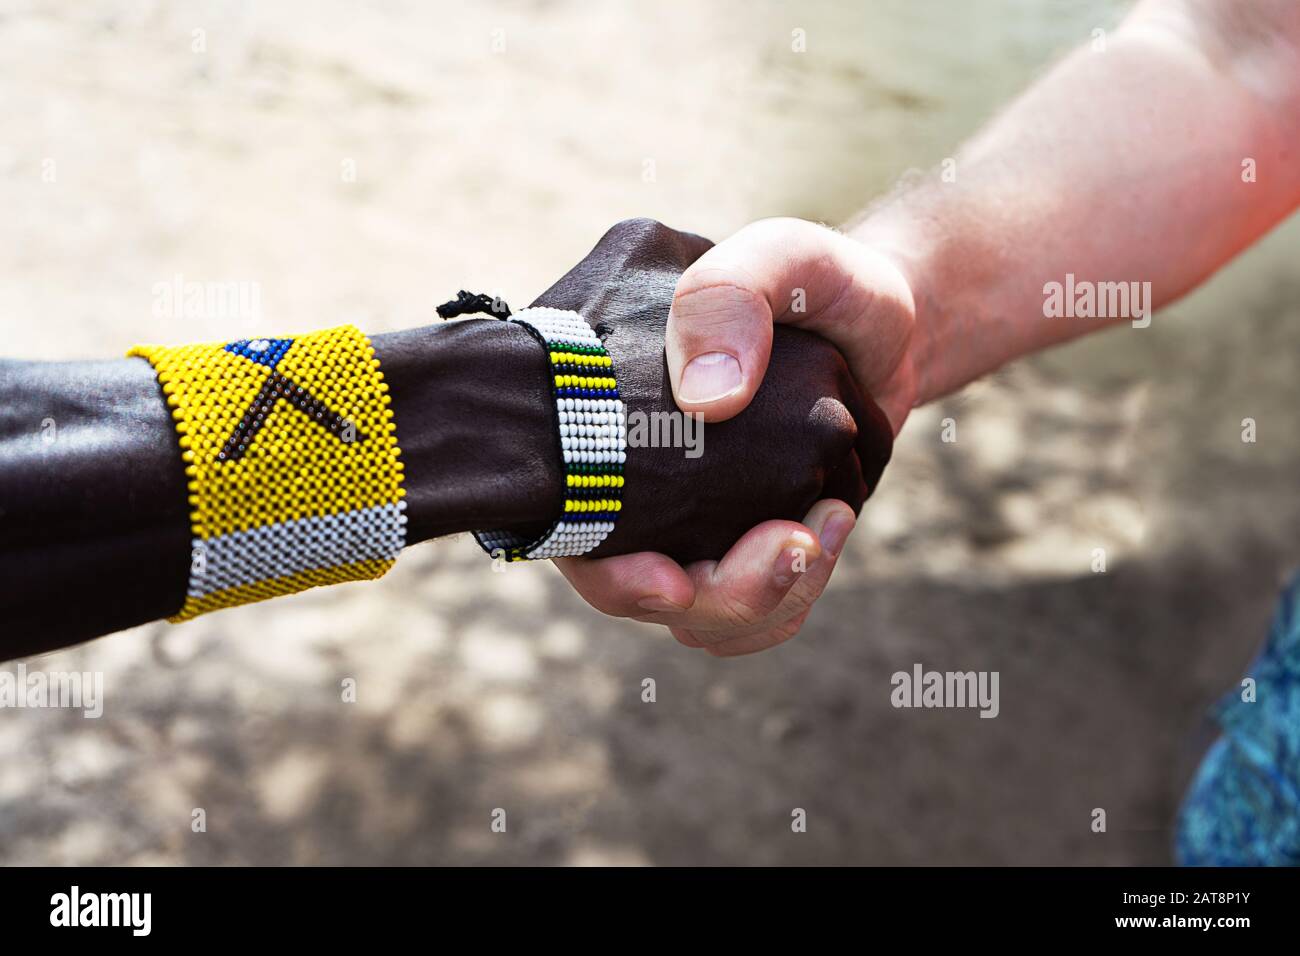 Handschlag von afrikanischen und europäischen oder amerikanischen Männern. Das Konzept der Freundschaft und der Geschäftsbeziehungen zwischen Ländern und Kontinenten. Stockfoto